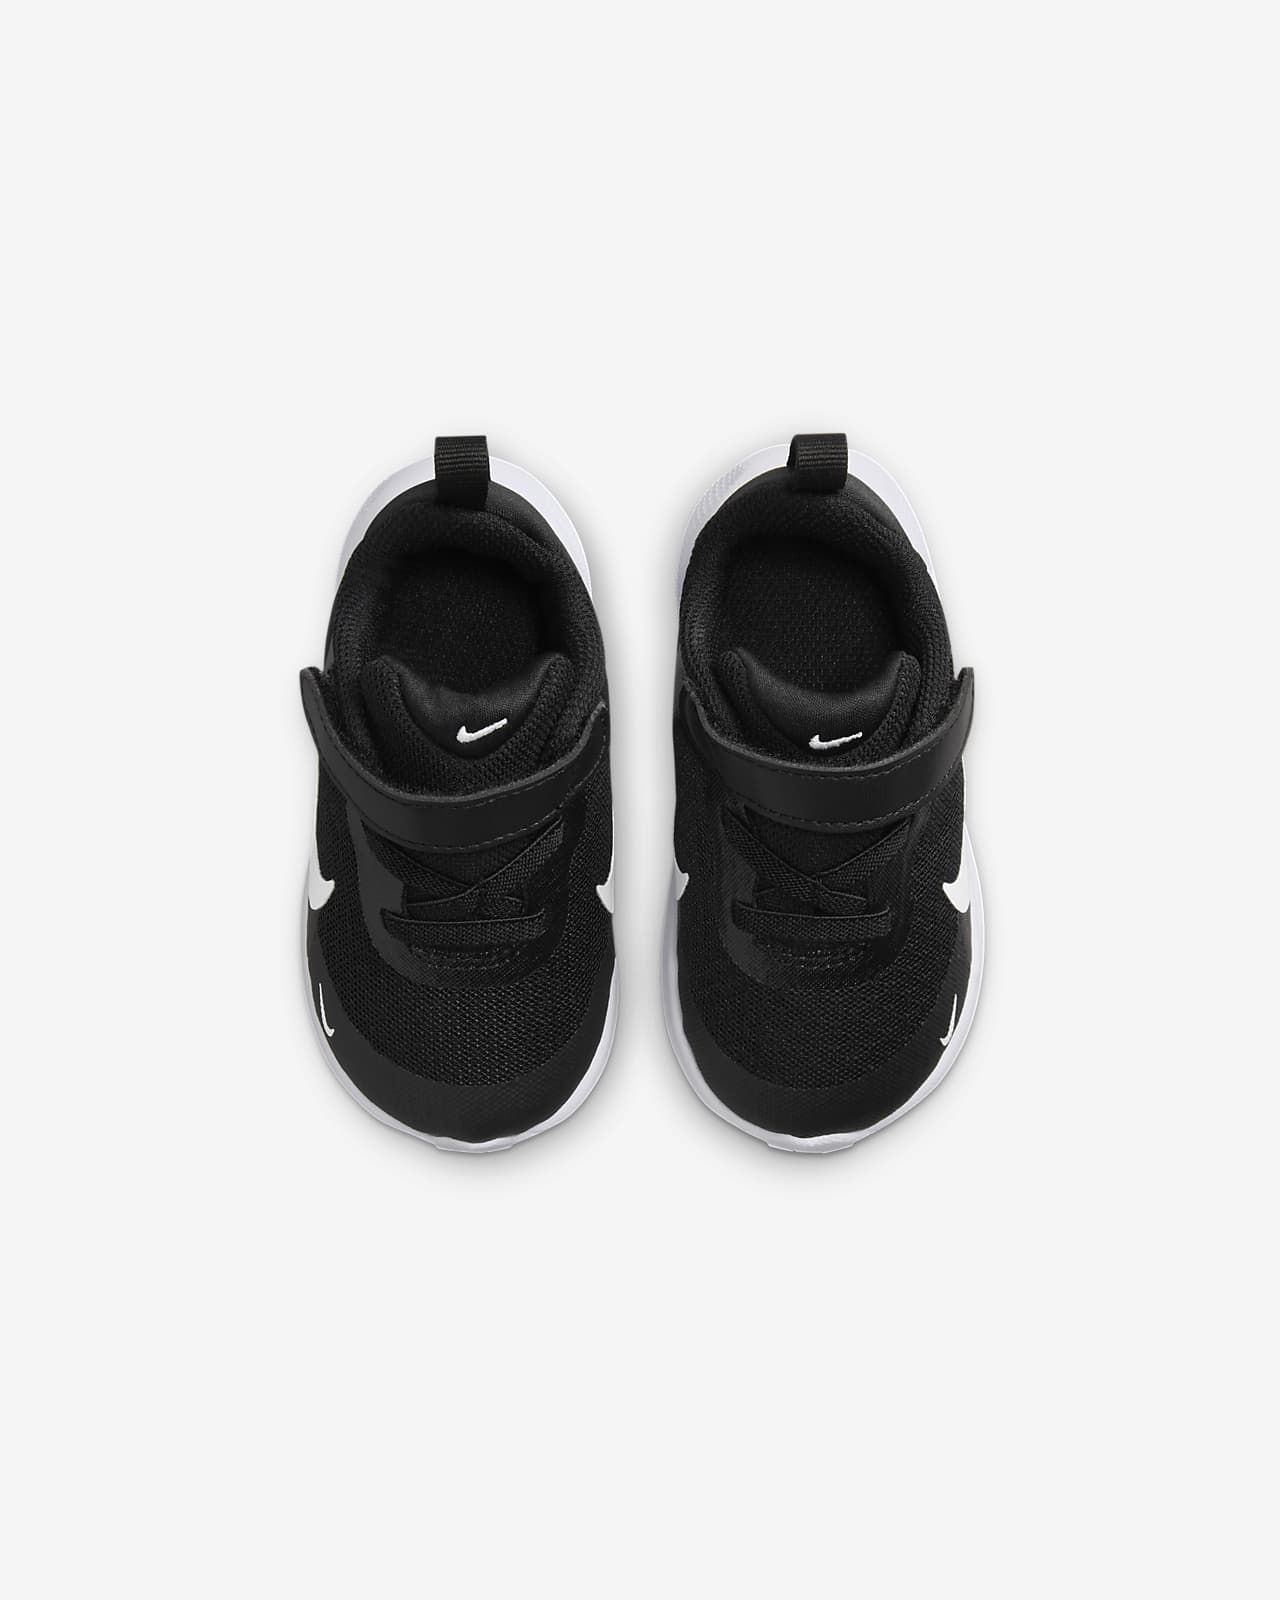 Achetez des Chaussures pour Bébé en Ligne. Nike CA